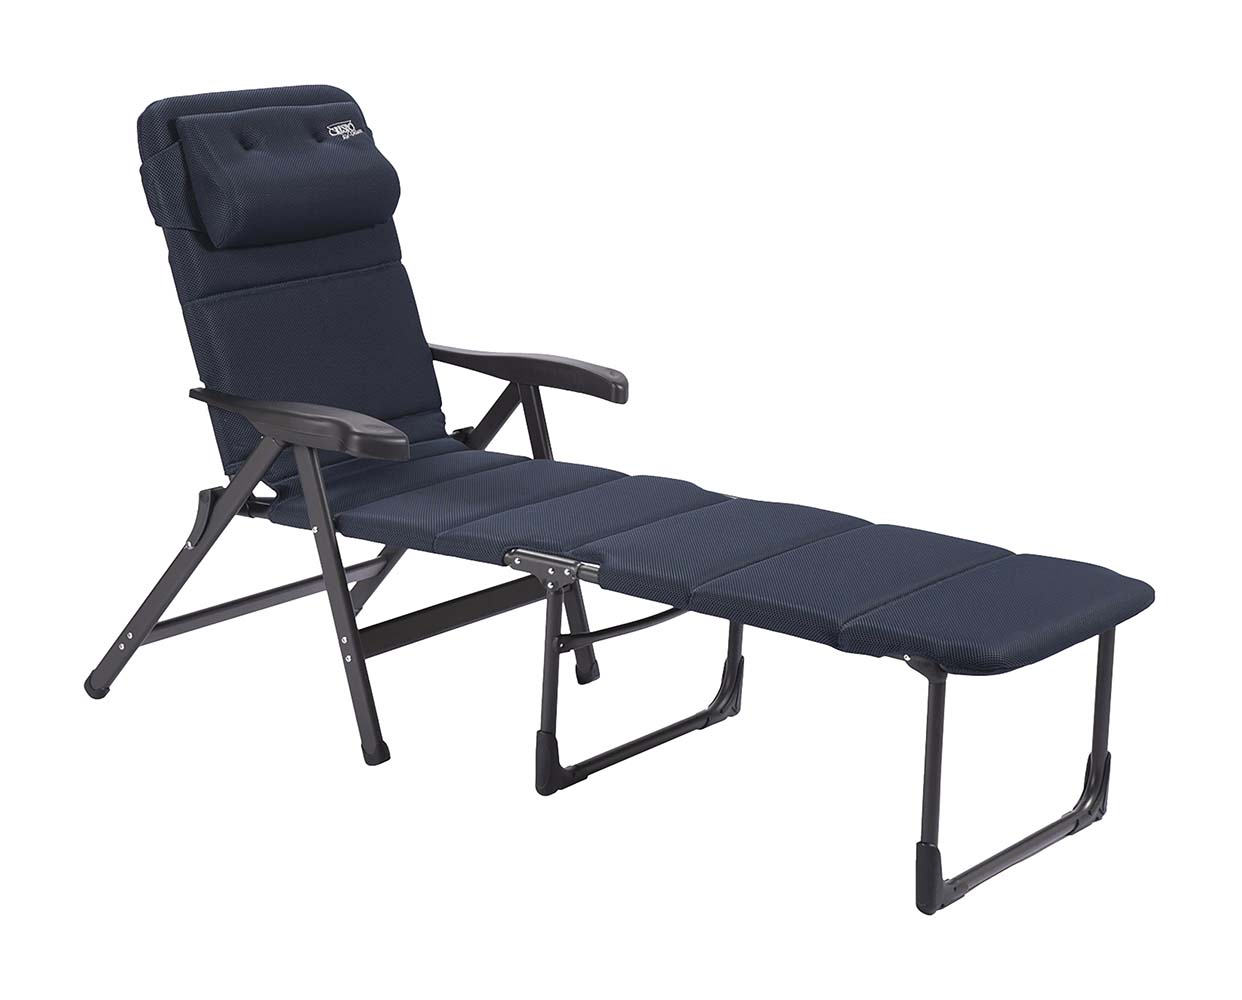 1148366 Een multifunctionele en uiterst comfortabele stoel. Deze stoel is door het unieke frame te gebruiken als ligstoel, om te zitten en als relaxstoel. Hierbij is de rugleuning verstelbaar in 7 standen. Deze stoel biedt maximaal comfort dankzij de gepolsterde 3D stof welke extra luchtdoorlatend is en geen vocht vasthoudt. Daarnaast beschikt deze stoel over een verstelbaar en zeer luxe hoofdkussen.